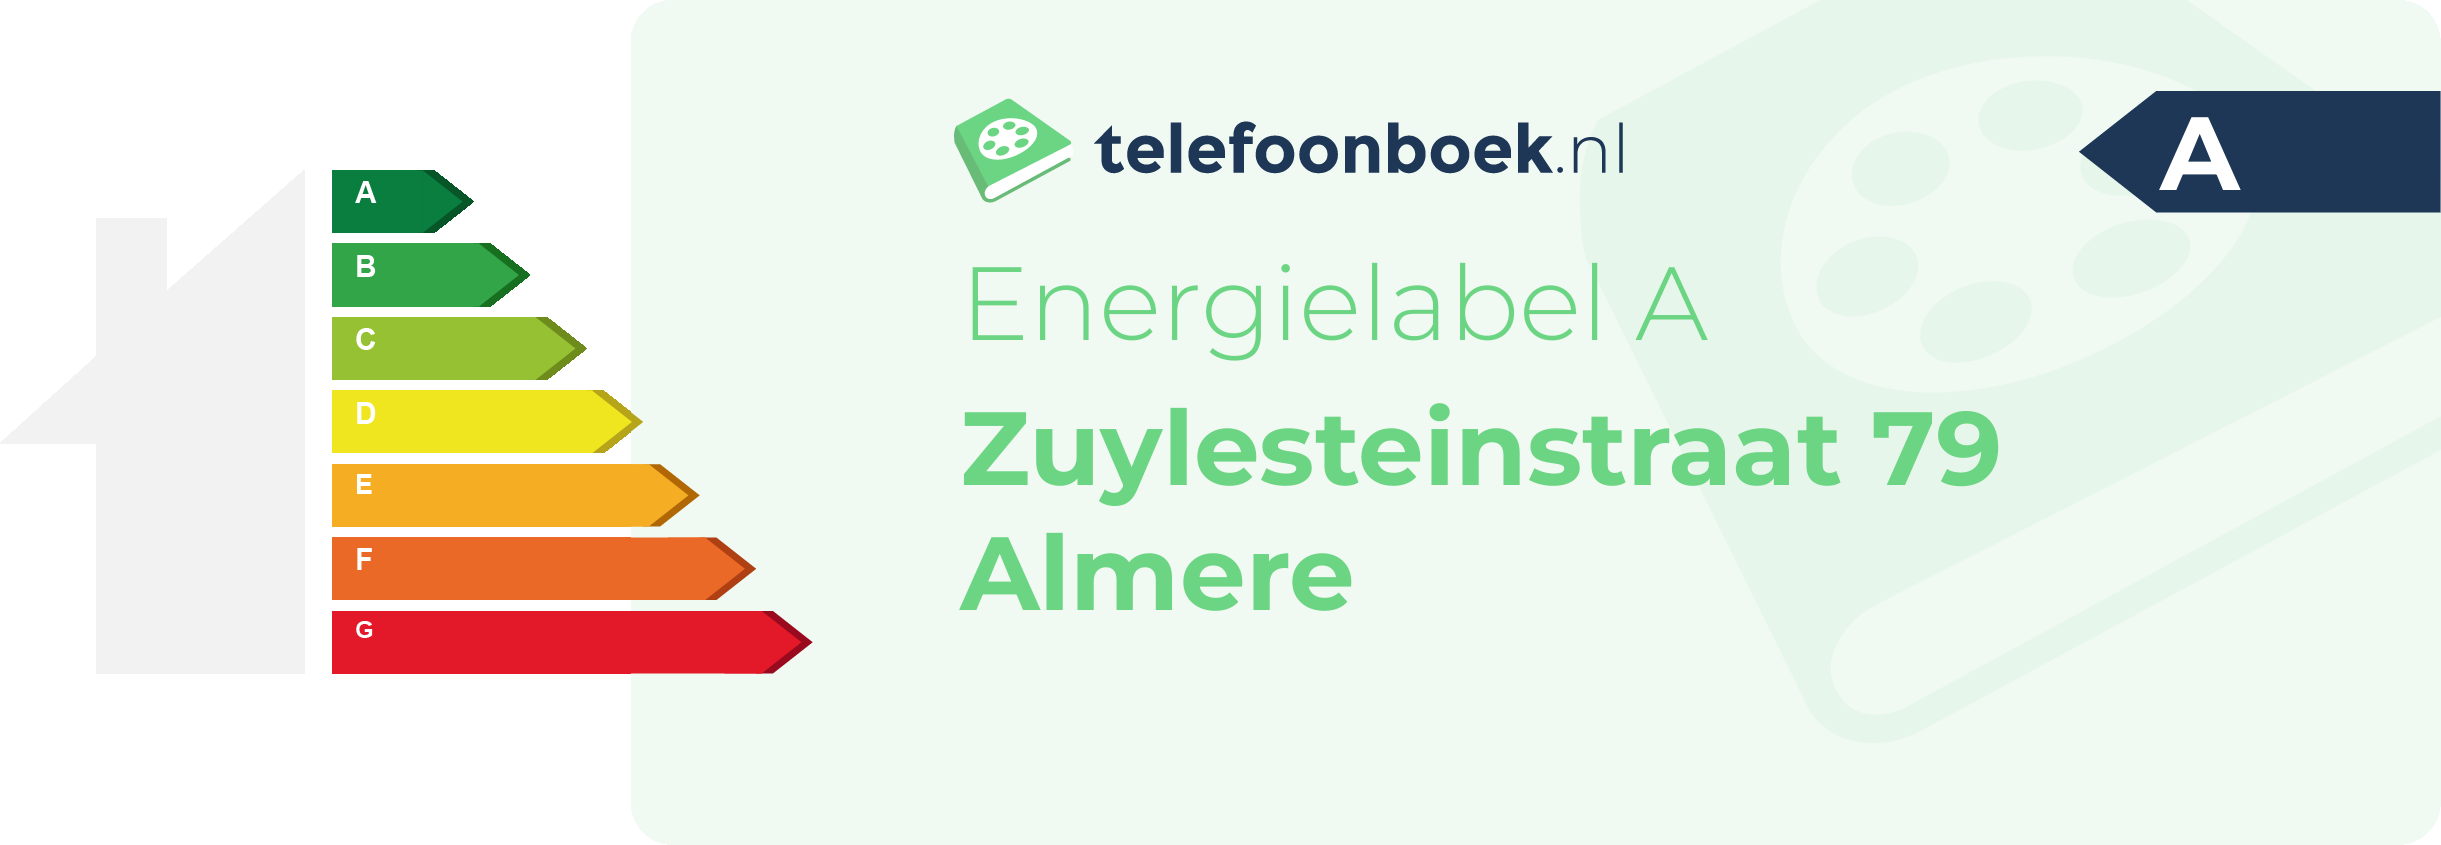 Energielabel Zuylesteinstraat 79 Almere